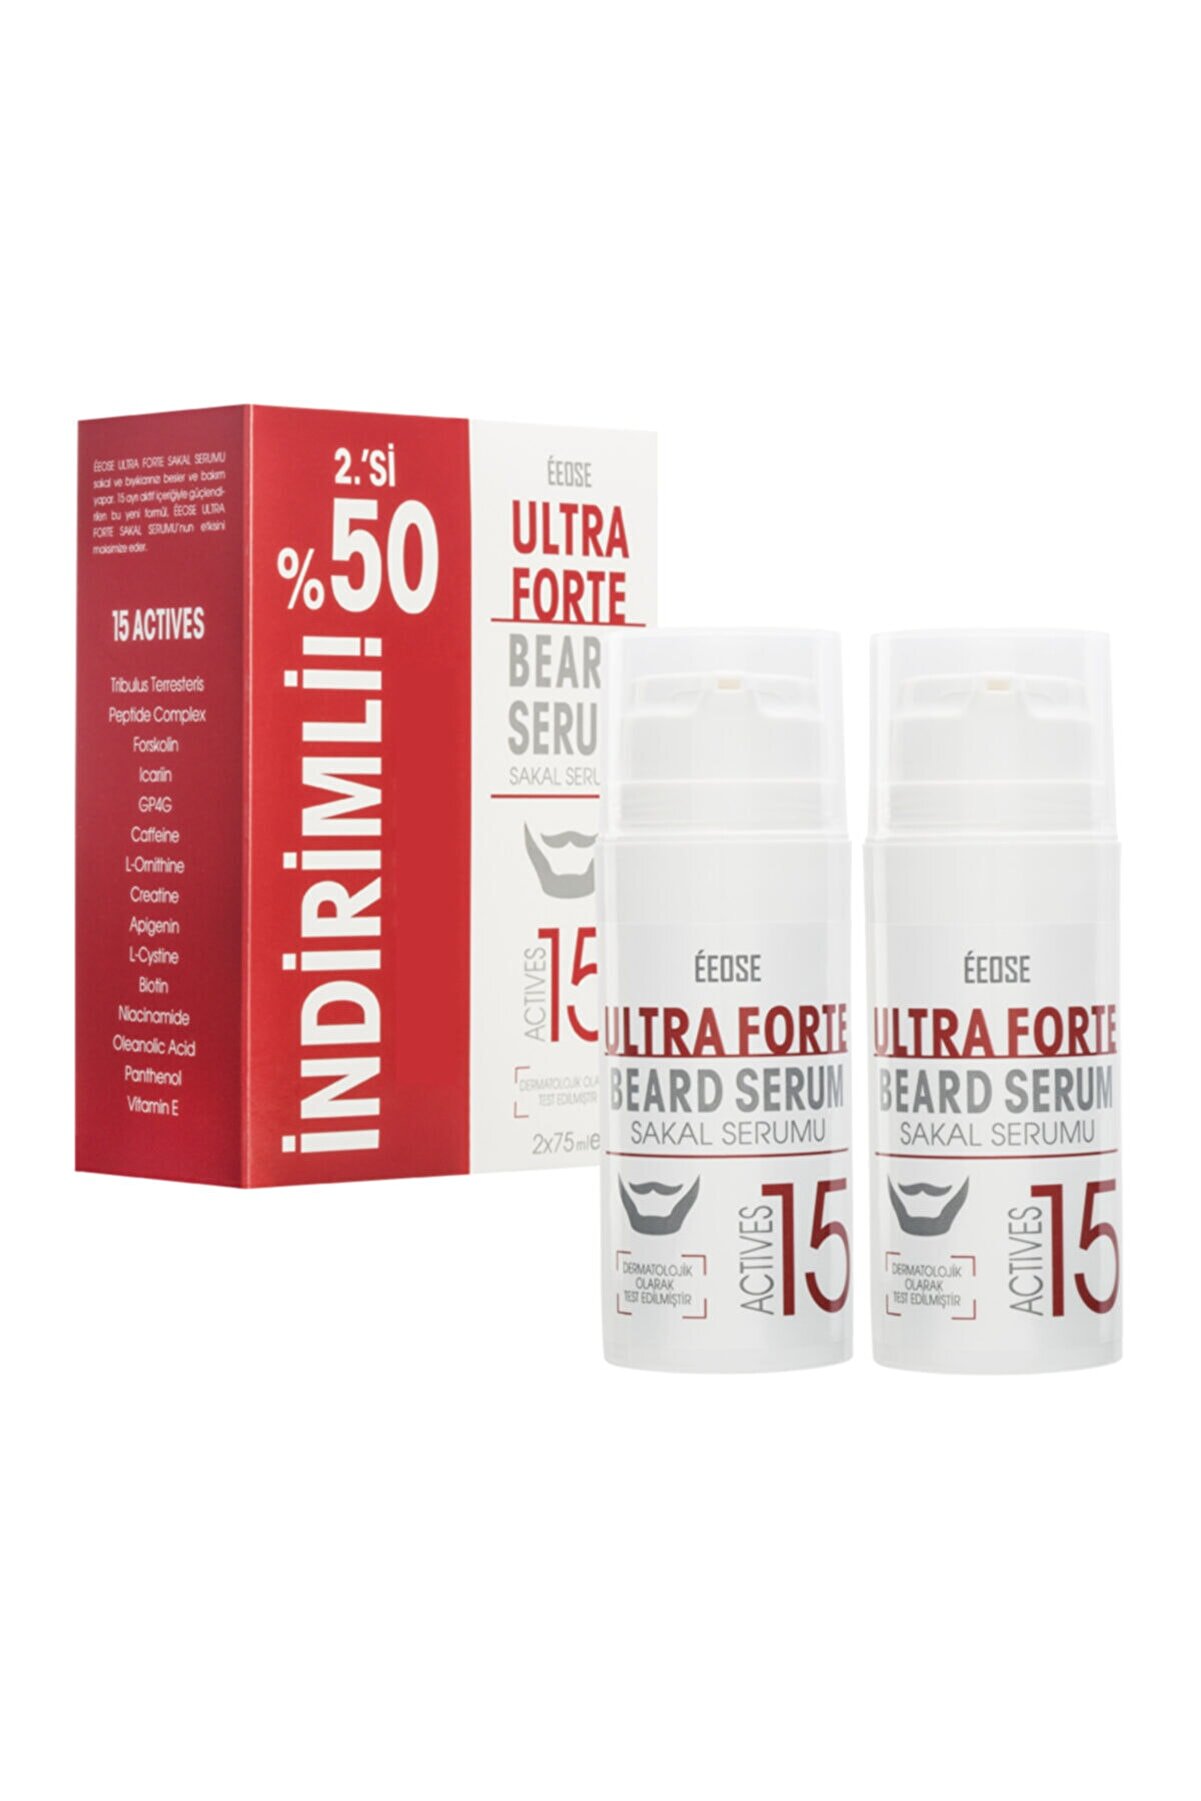 Eeose Ultra Forte Sakal Serumu Ikili Fırsat Paketi (2ncisi %50 ) (2x75 ml)